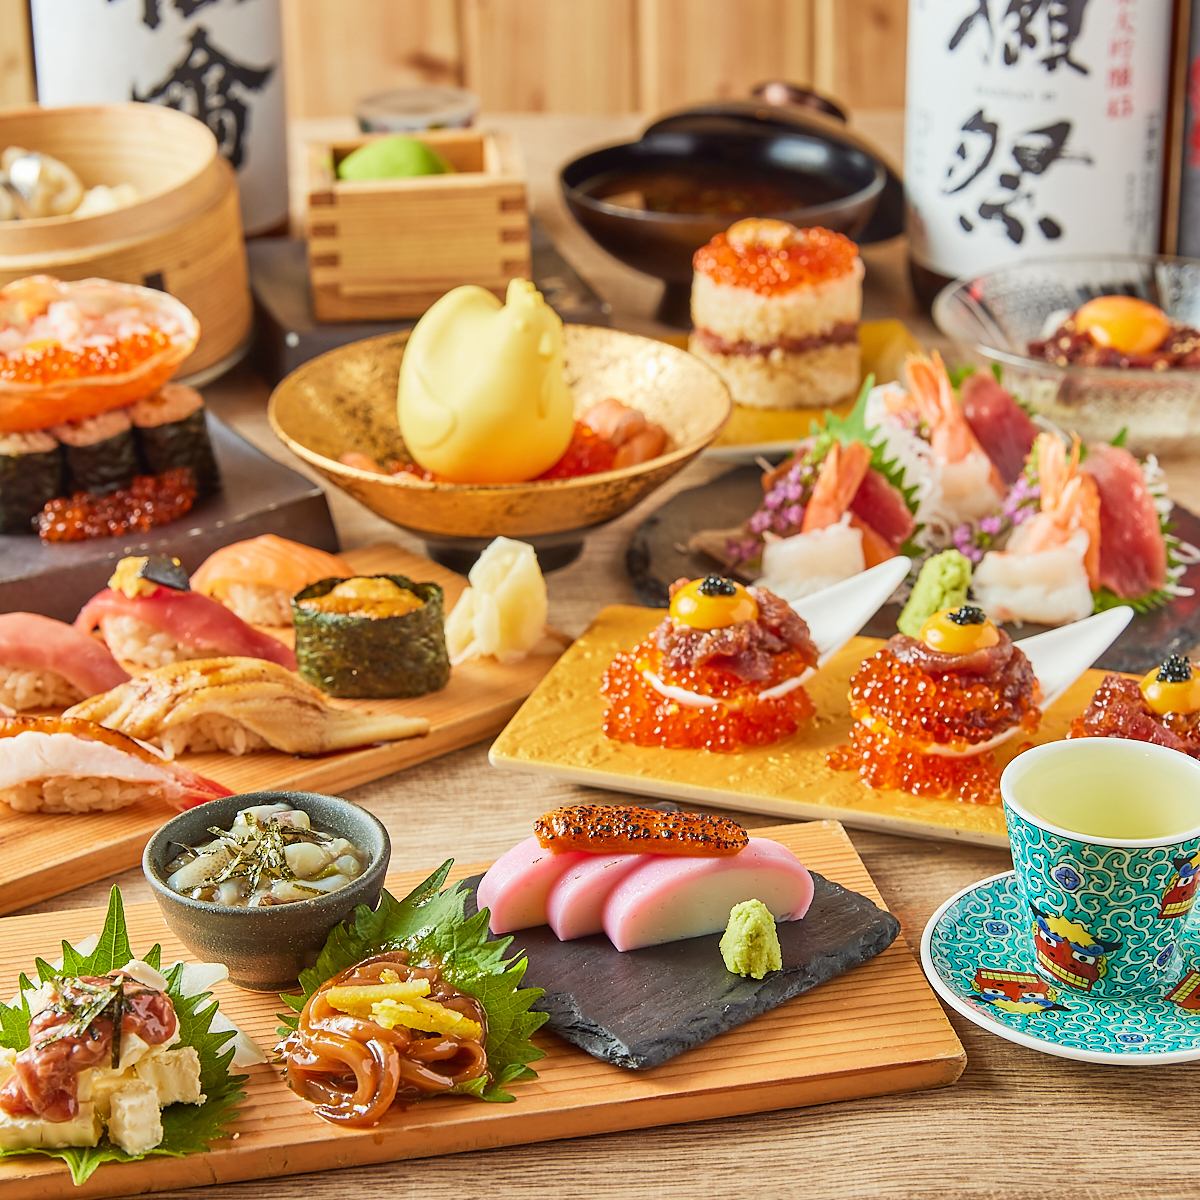 可以品尝严选食材的寿司和牡蛎的寿司居酒屋！